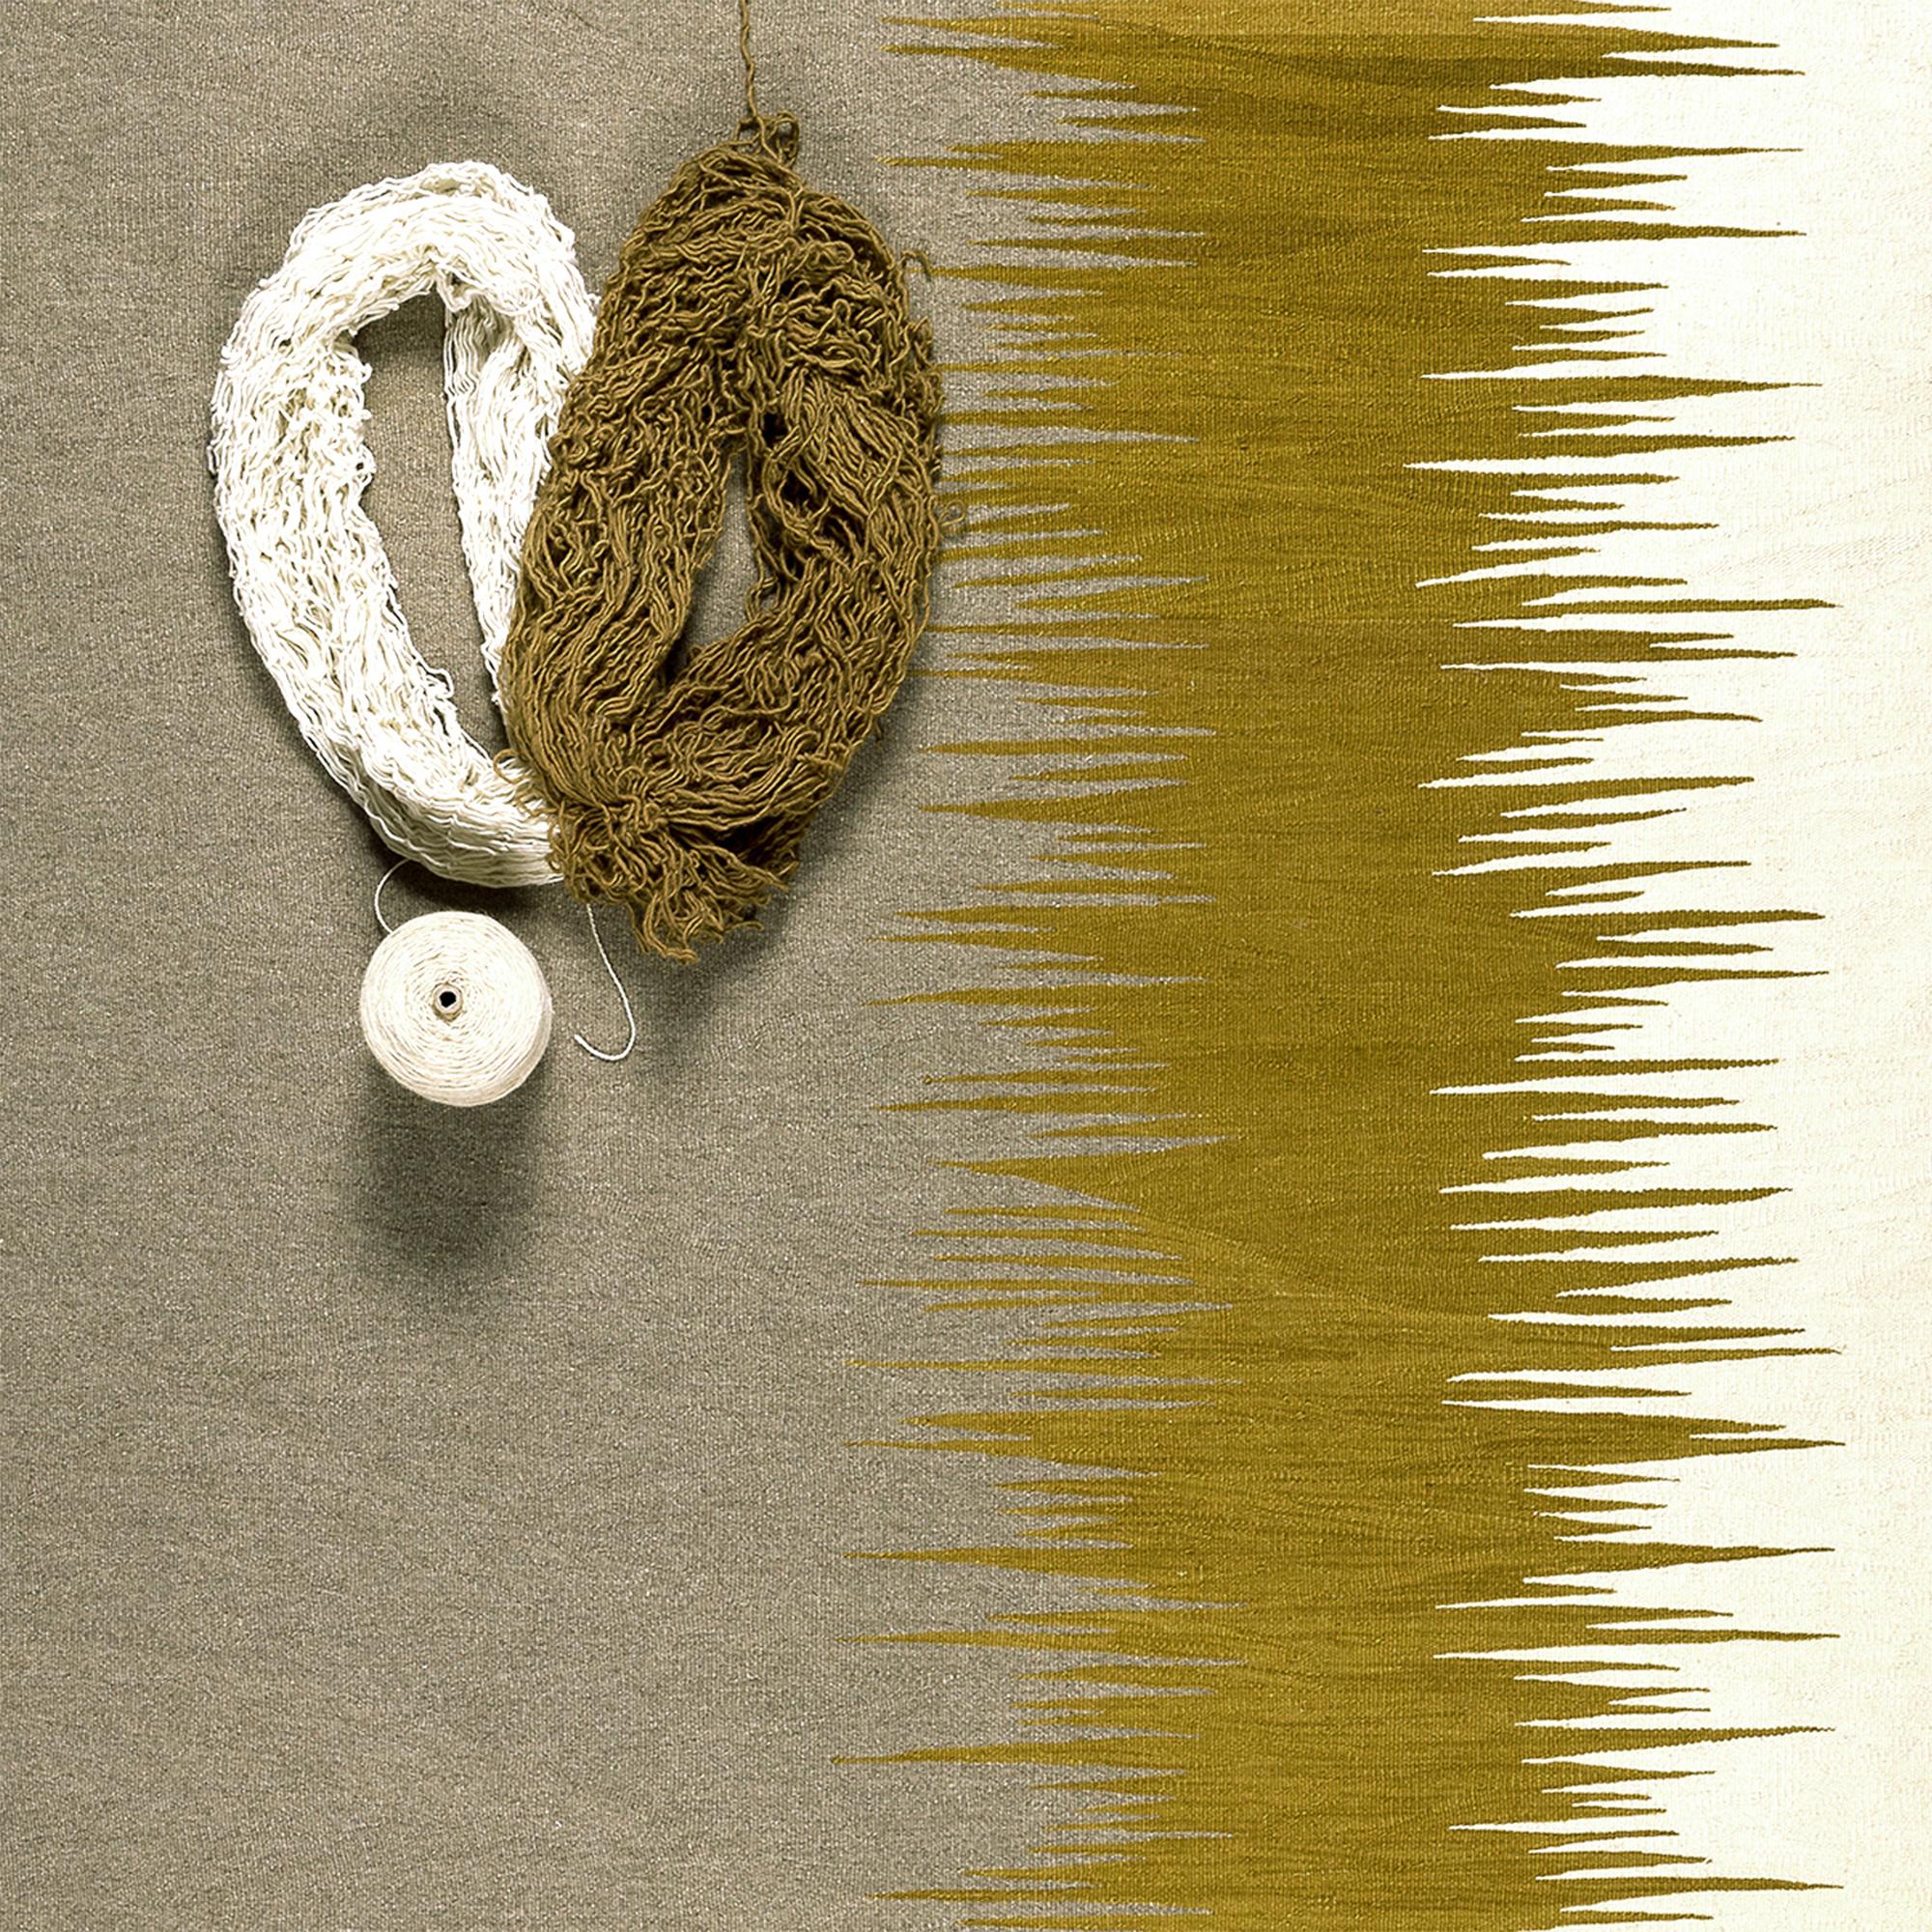 Der Kelimteppich Yakamoz No 2 gehört zu einer Serie von Kelims, die sich von der Poesie der Lichtreflexe auf der Meeresoberfläche inspirieren lassen. Die abstrakten Muster, die an wechselnde Farbübergänge durch reflektiertes Licht erinnern, werden